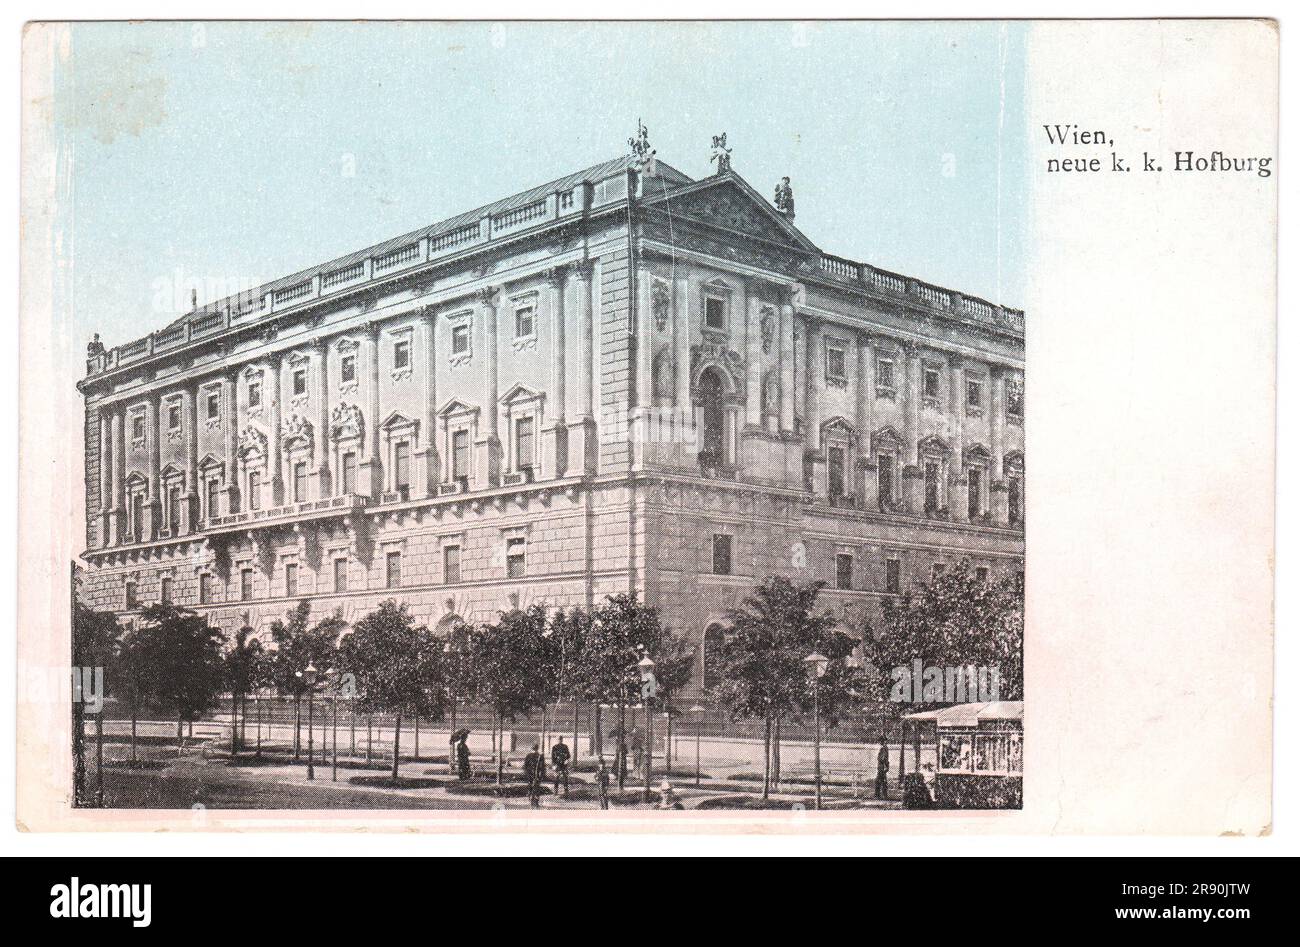 Impero austro-ungarico, Vienna - circa 1905: Cartolina d'epoca. Immagine retrò dell'Ala della Cancelleria Imperiale del palazzo imperiale principale degli Asburgo Foto Stock